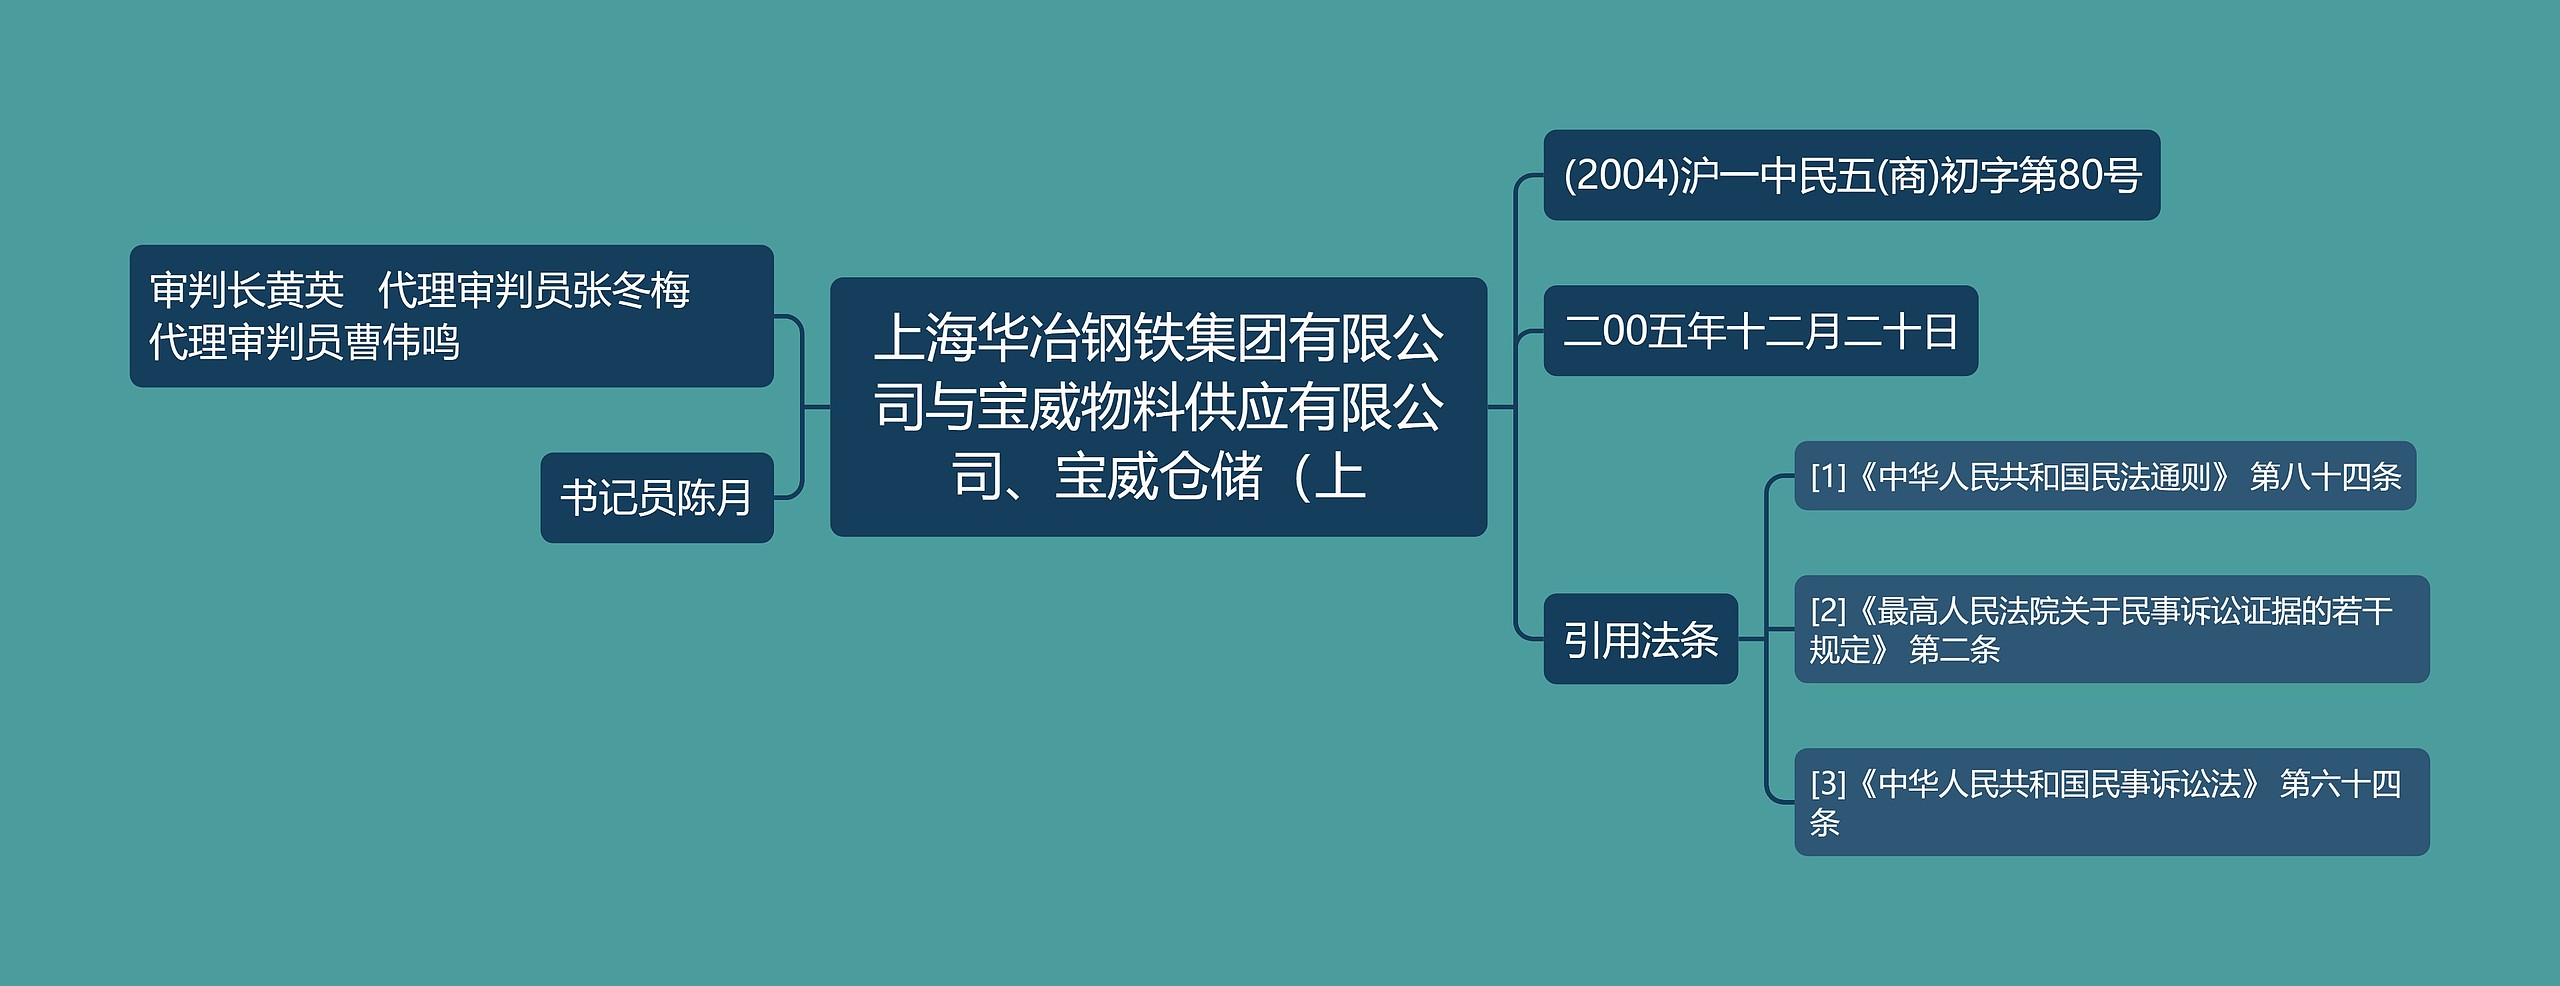 上海华冶钢铁集团有限公司与宝威物料供应有限公司、宝威仓储（上